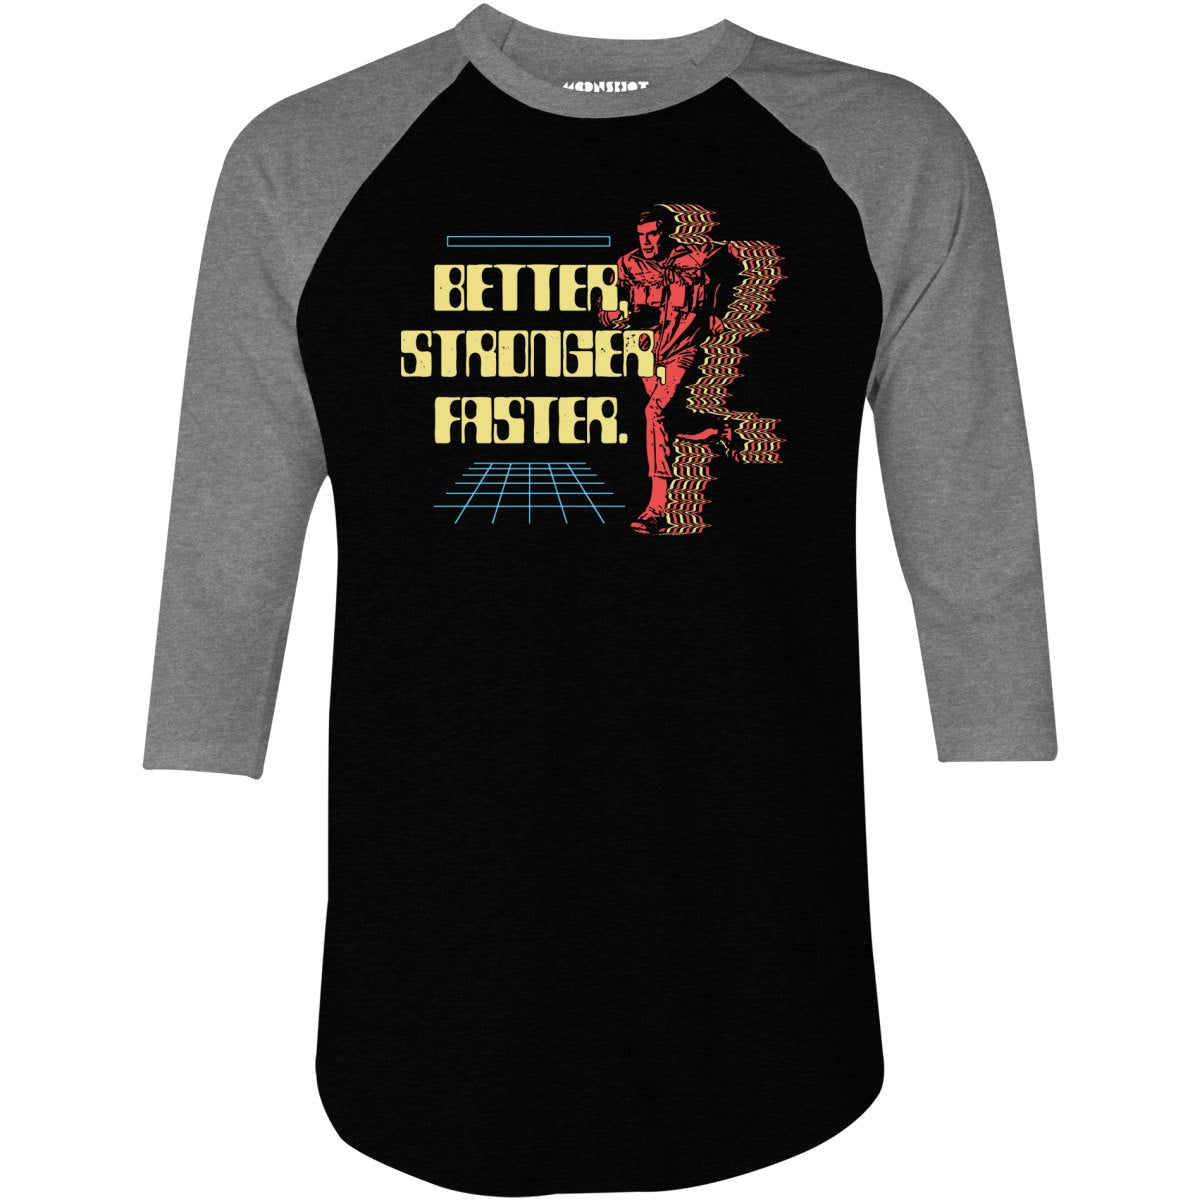 Better Stronger Faster - 3/4 Sleeve Raglan T-Shirt